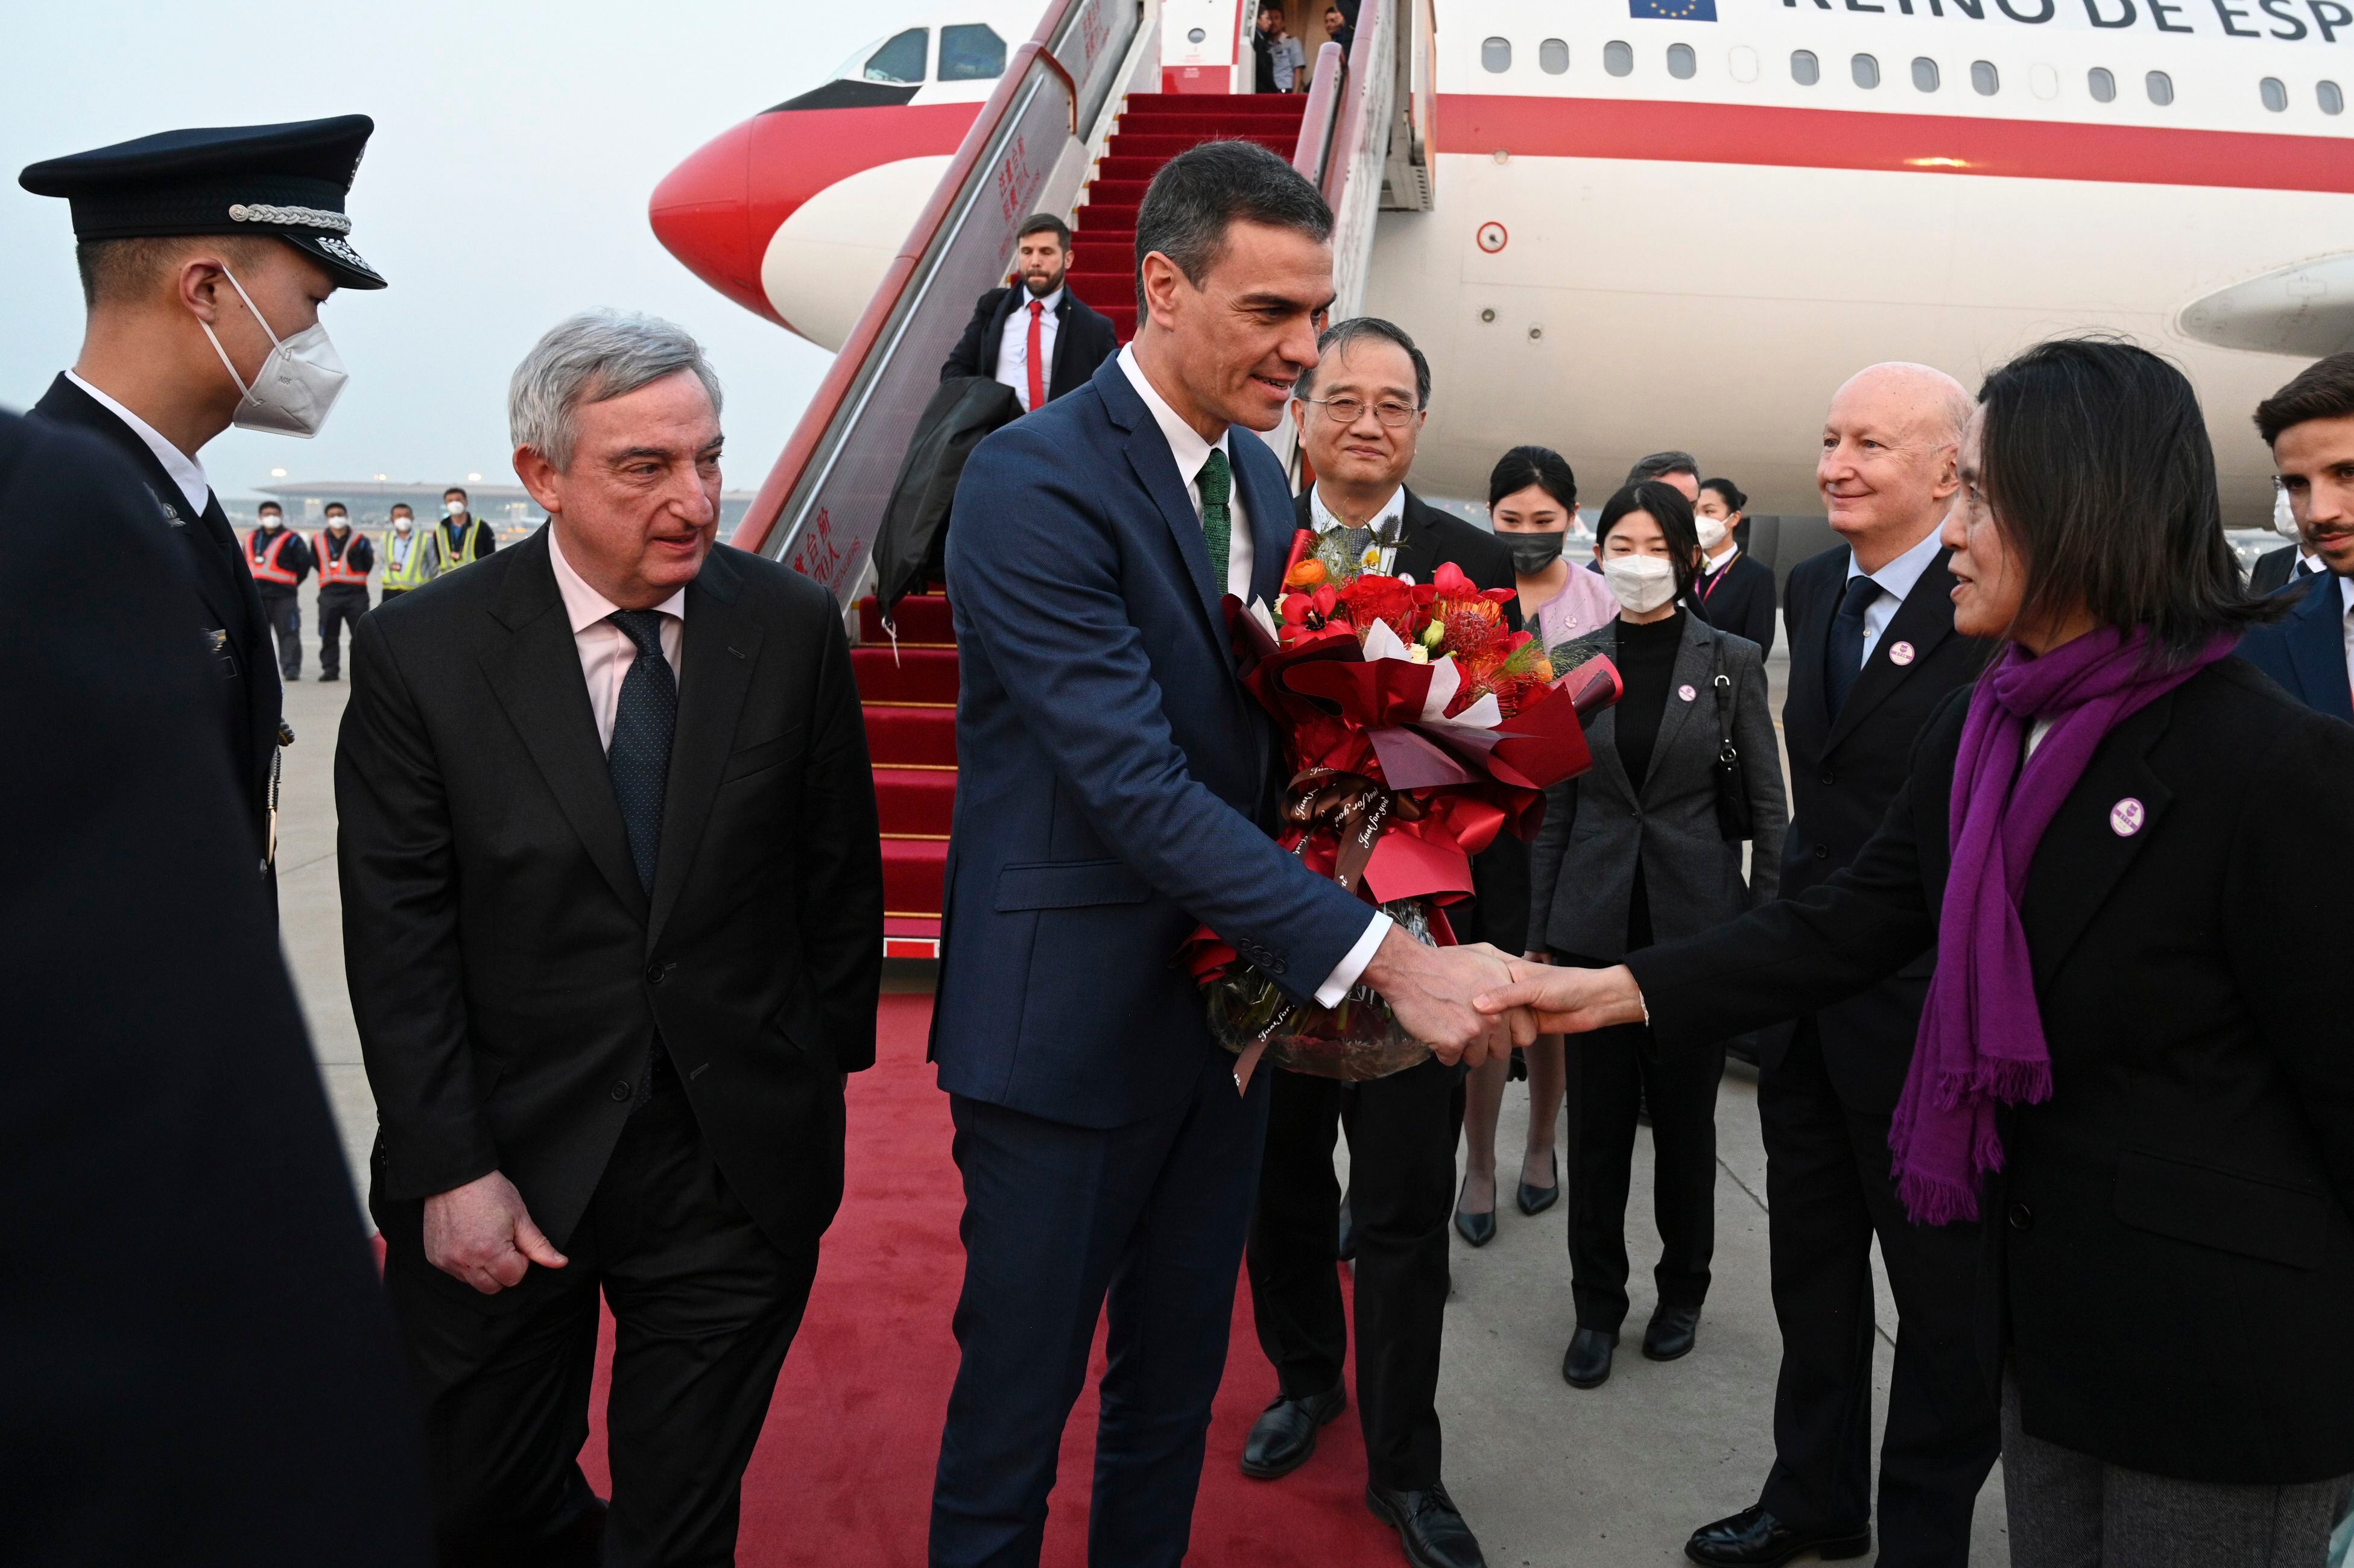  El presidente del Gobierno, Pedro Sánchez, acompañado por el embajador de España en China, Rafael Dezcallar (izqda.), es recibido por las autoridades de China a su llegada este jueves a Pekín tras en el Foro de Boao para Asia. 